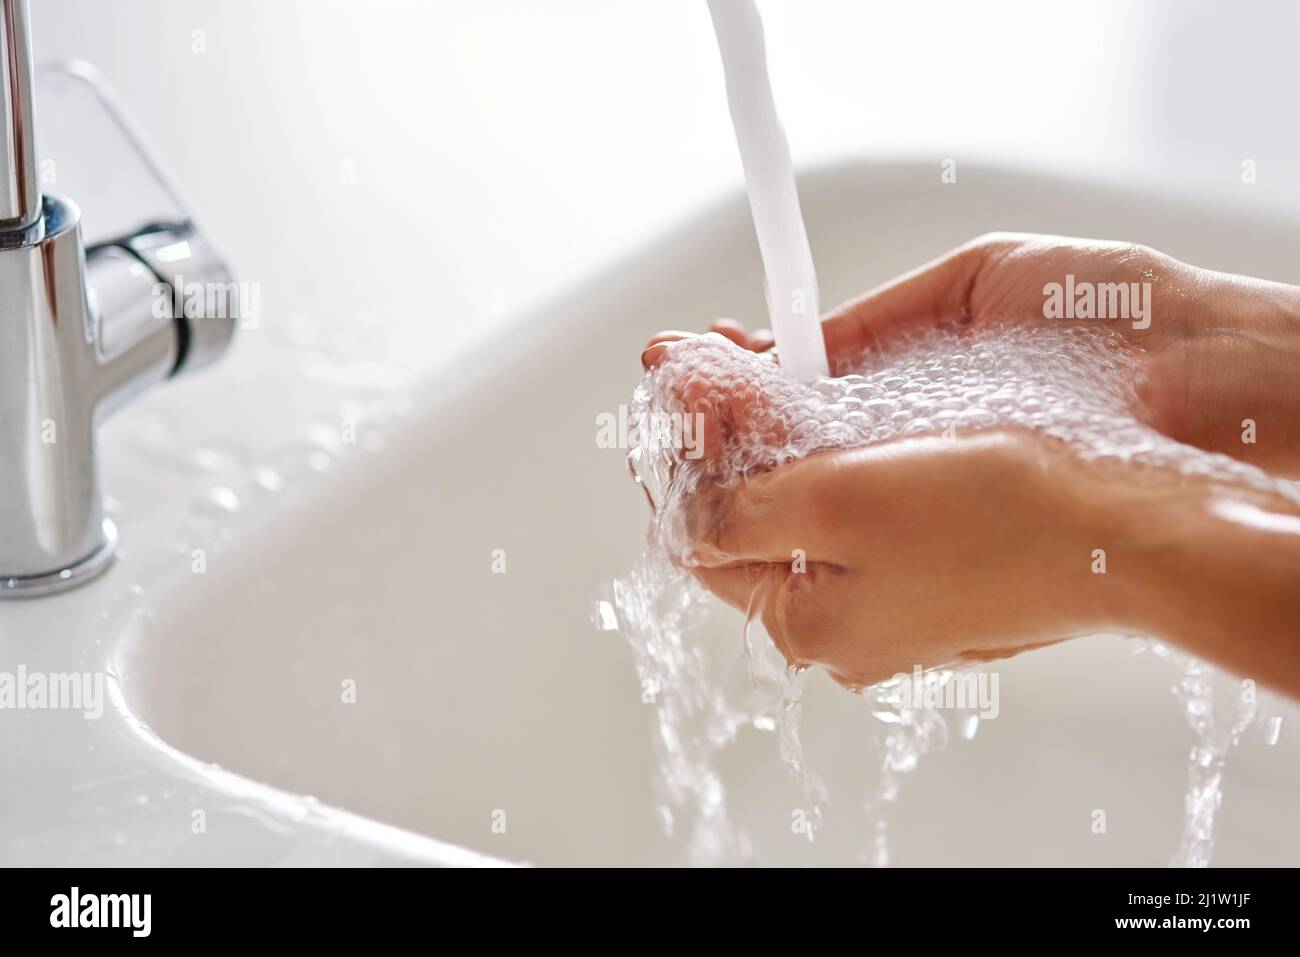 Bleiben Sie gesund, indem Sie Ihre Hände waschen. Abgeschnittene Aufnahme der Hände, die mit fließendem Wasser gewaschen wurden. Stockfoto